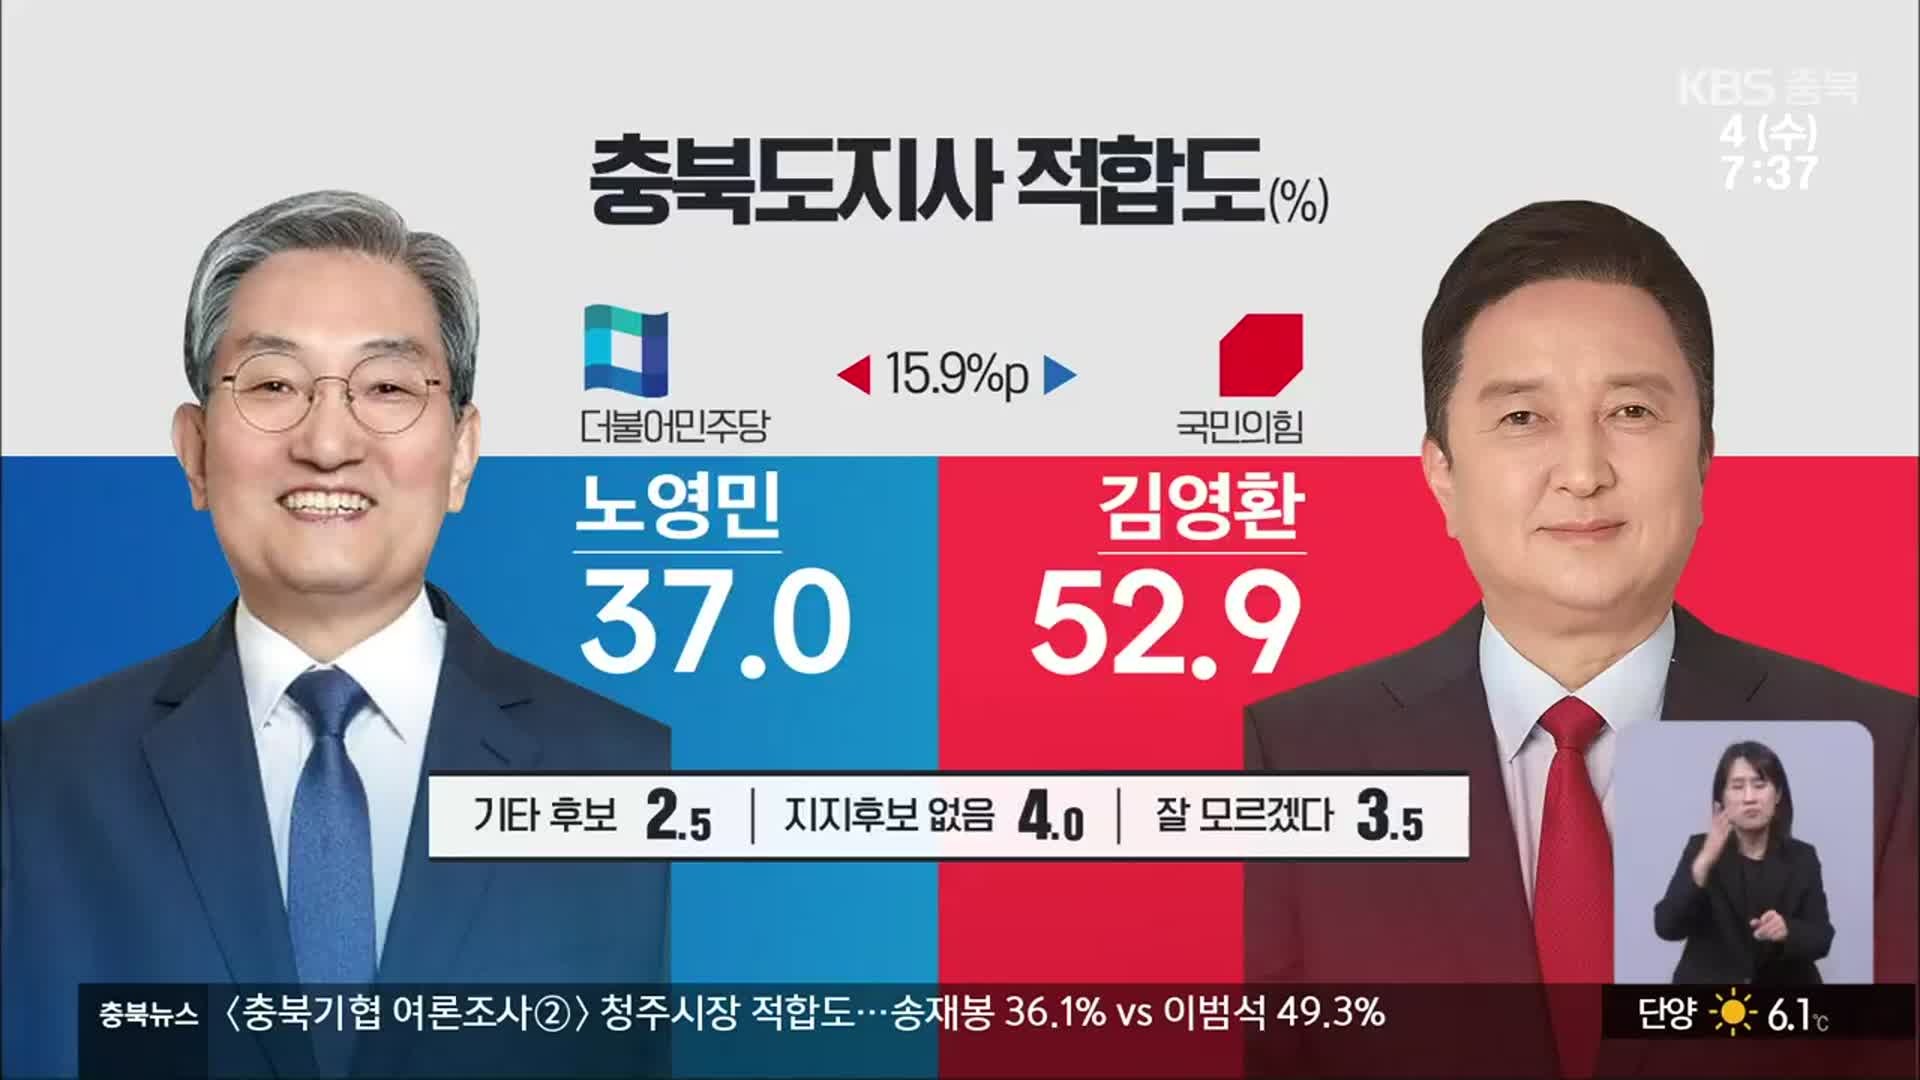 [충북 여론조사] 충북지사 적합도 노영민 37% vs 김영환 52.9%